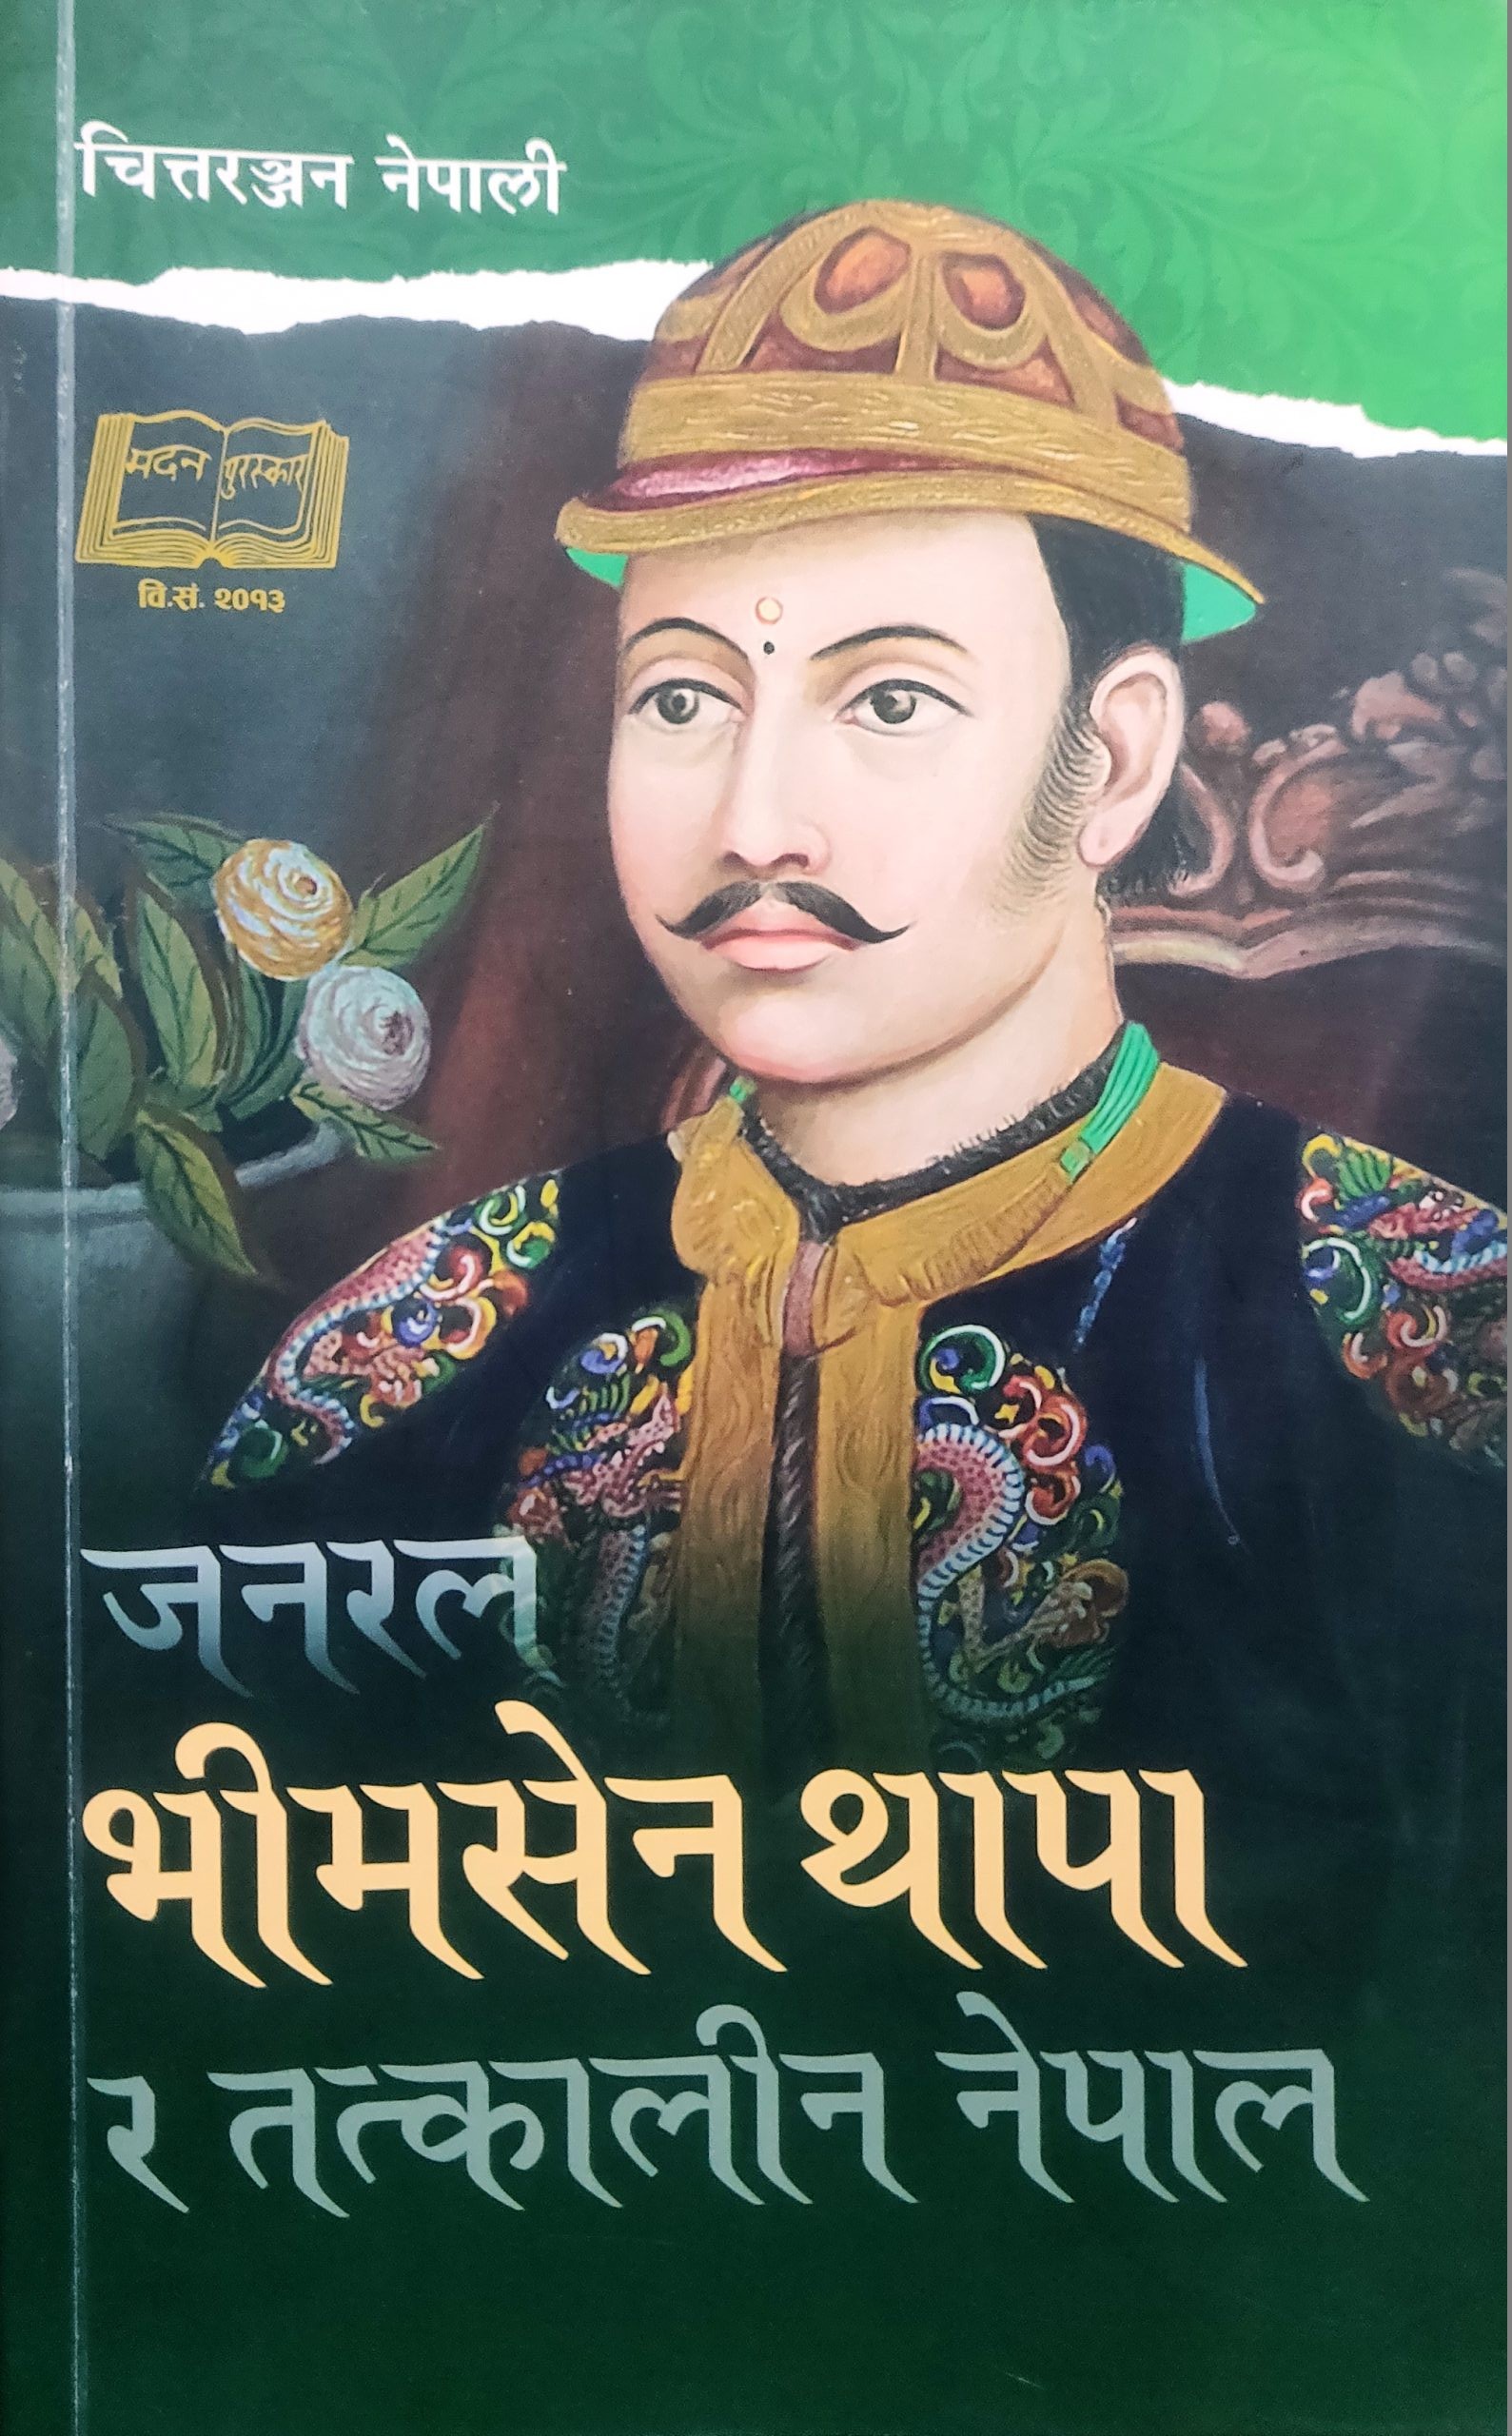 पुस्तक परिचय ‘जनरल भीमसेन थापा र तत्कालीन नेपाल’ पुस्तक पढ्दा